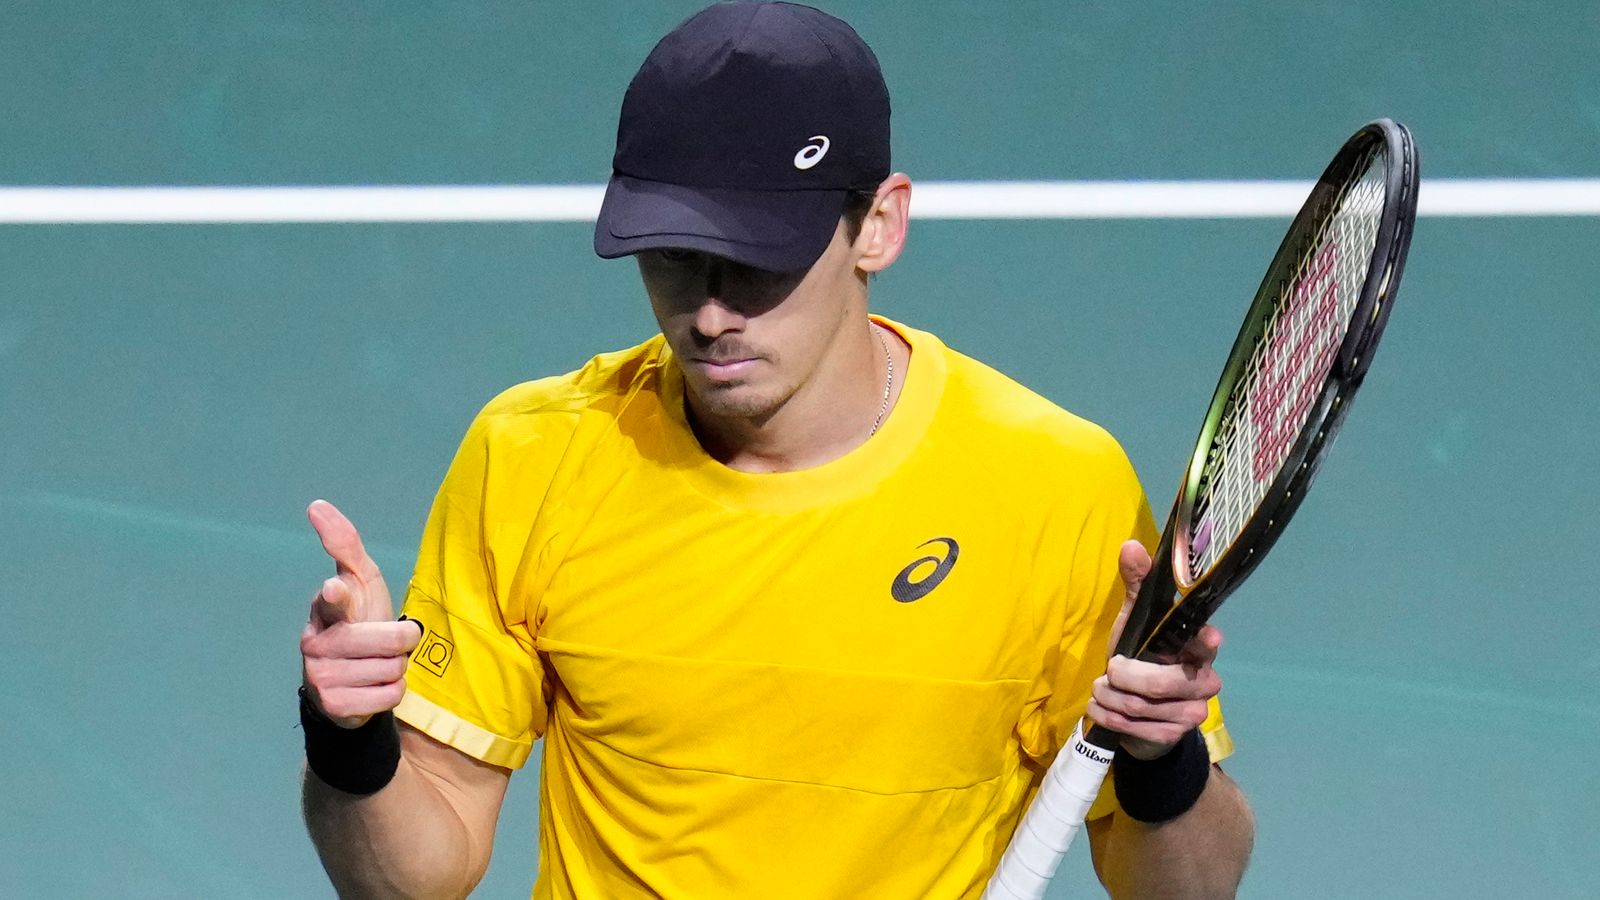 Davis Cup: Austrálie se vzpamatovává z pokraje, aby porazila Českou republiku a dostala se do semifinále |  Tenisové novinky